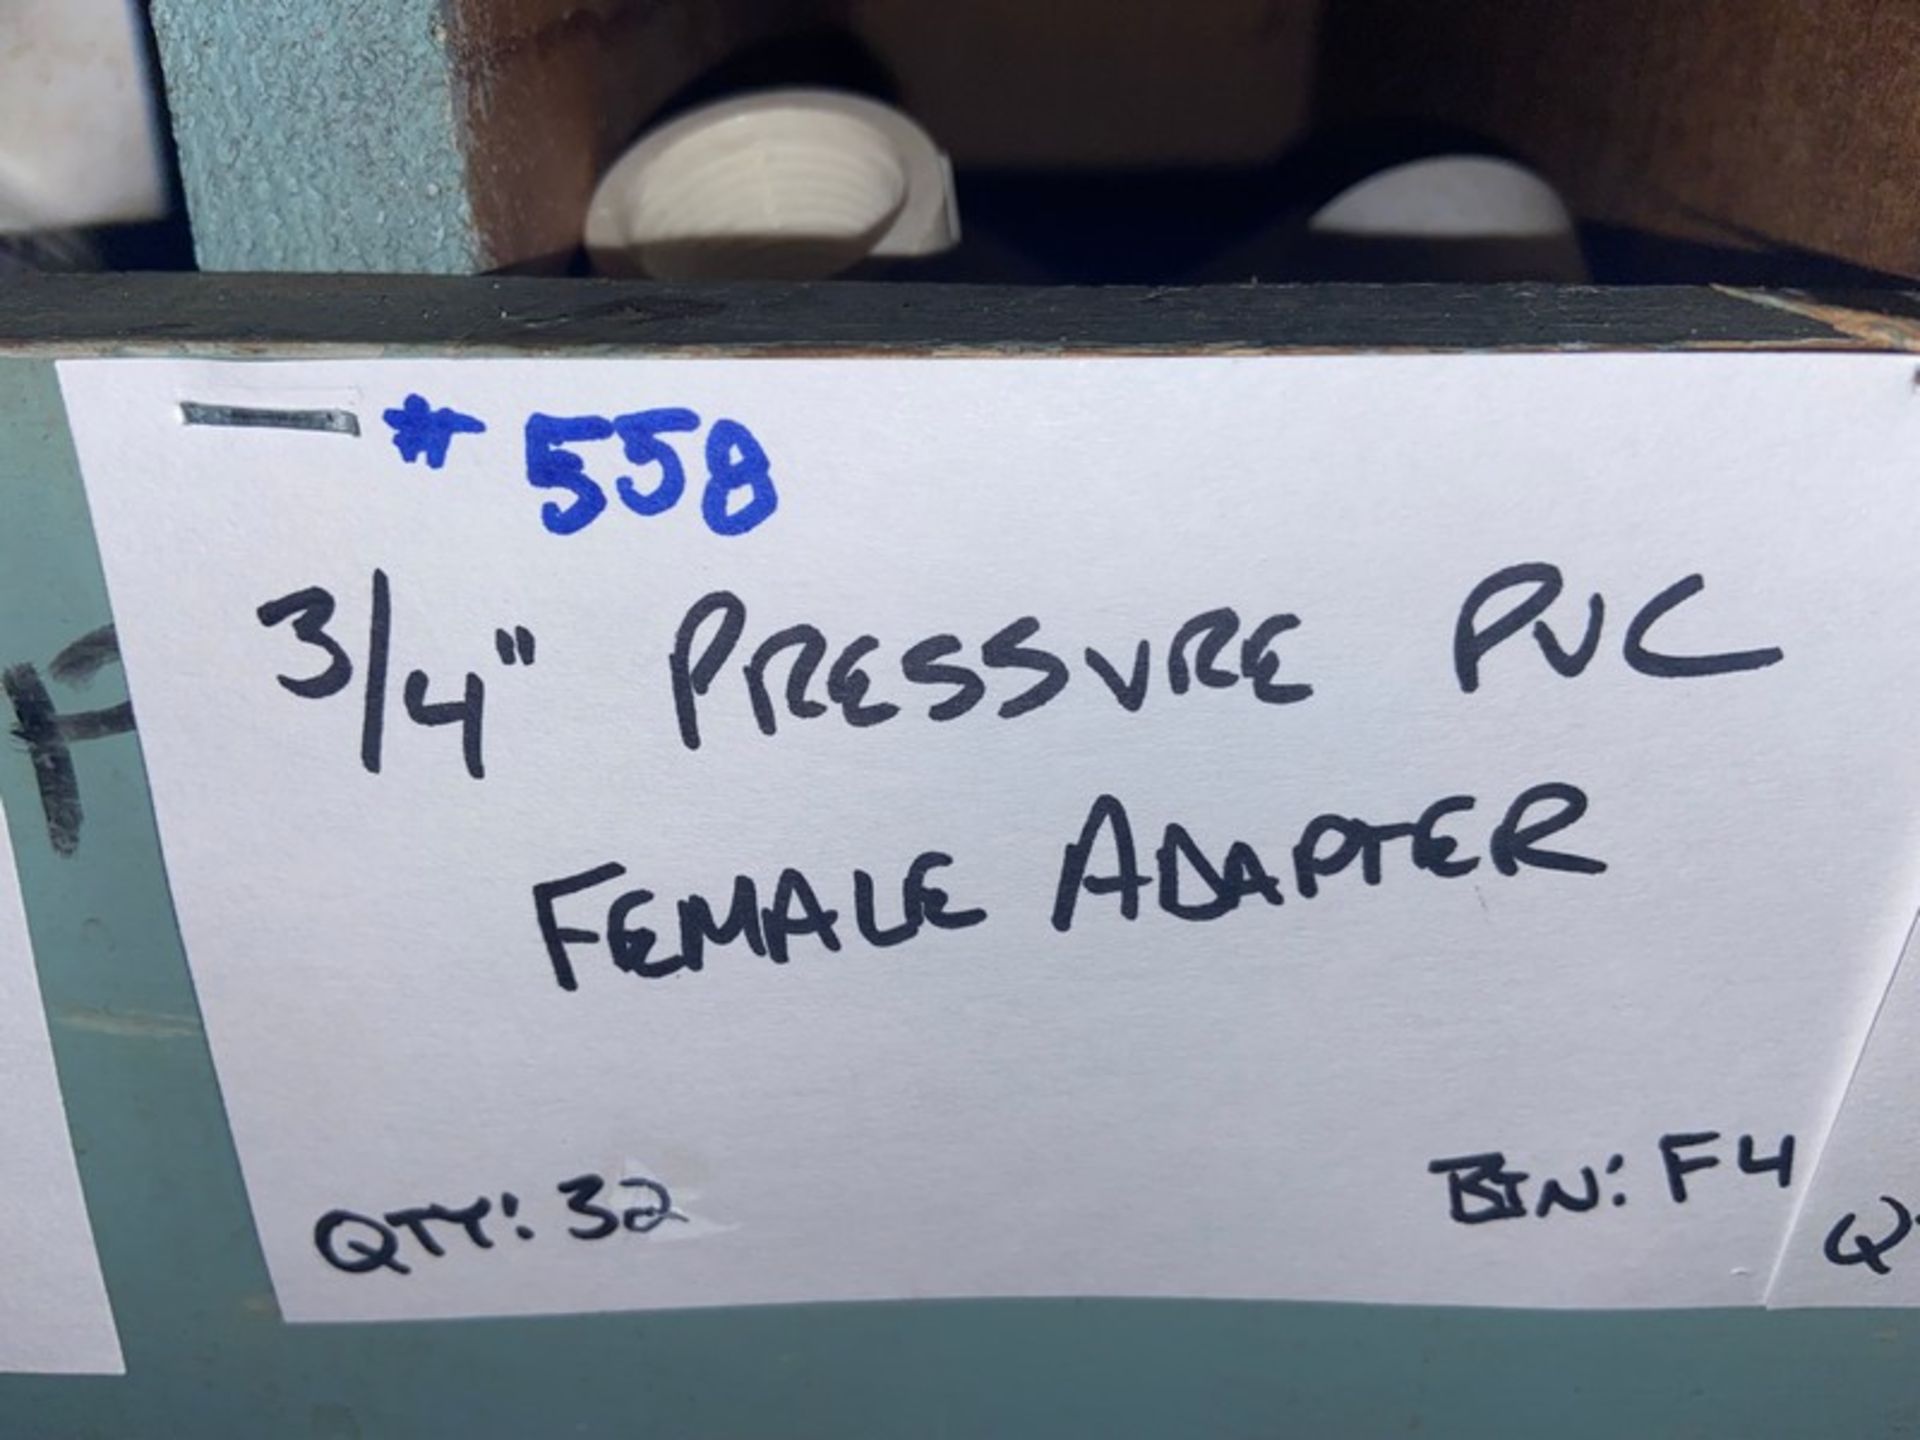 (32) 3/4” Pressure PVC Female Adapter (Bin:F4), Includes (9) 3/4” Pressure PVC Male Adapter (Bin: - Image 20 of 20